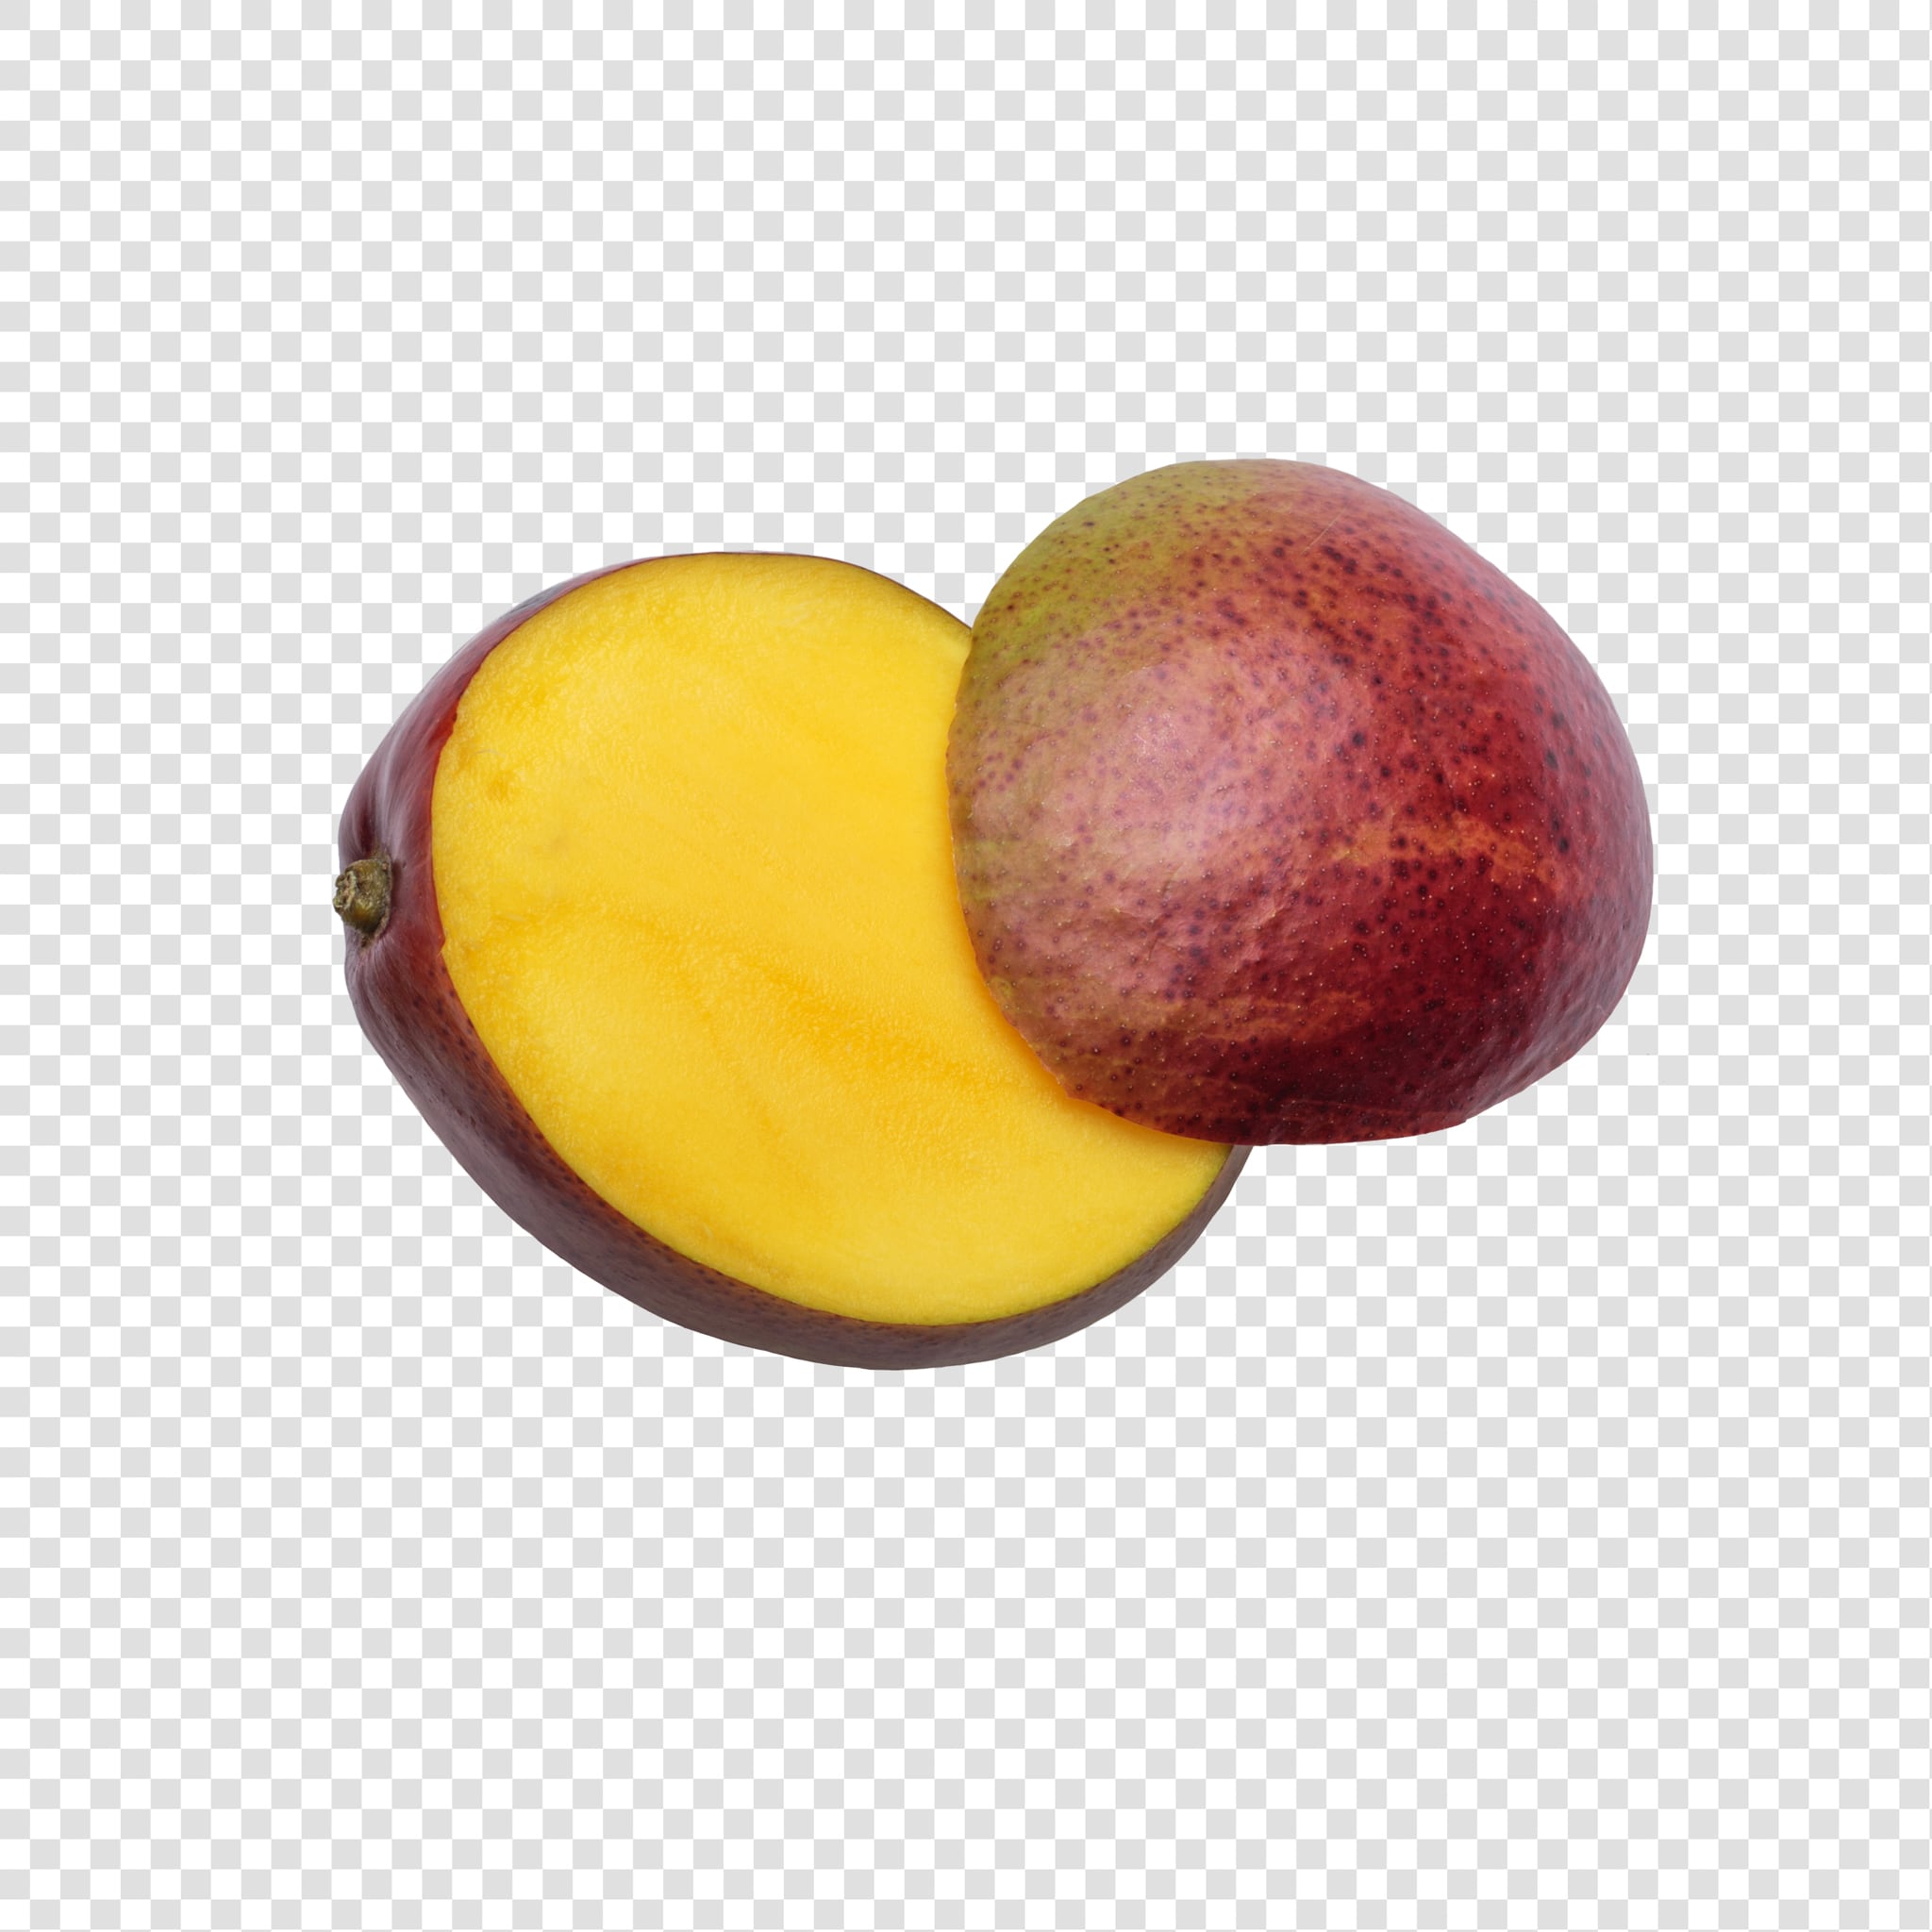 Mango PSD isolated image